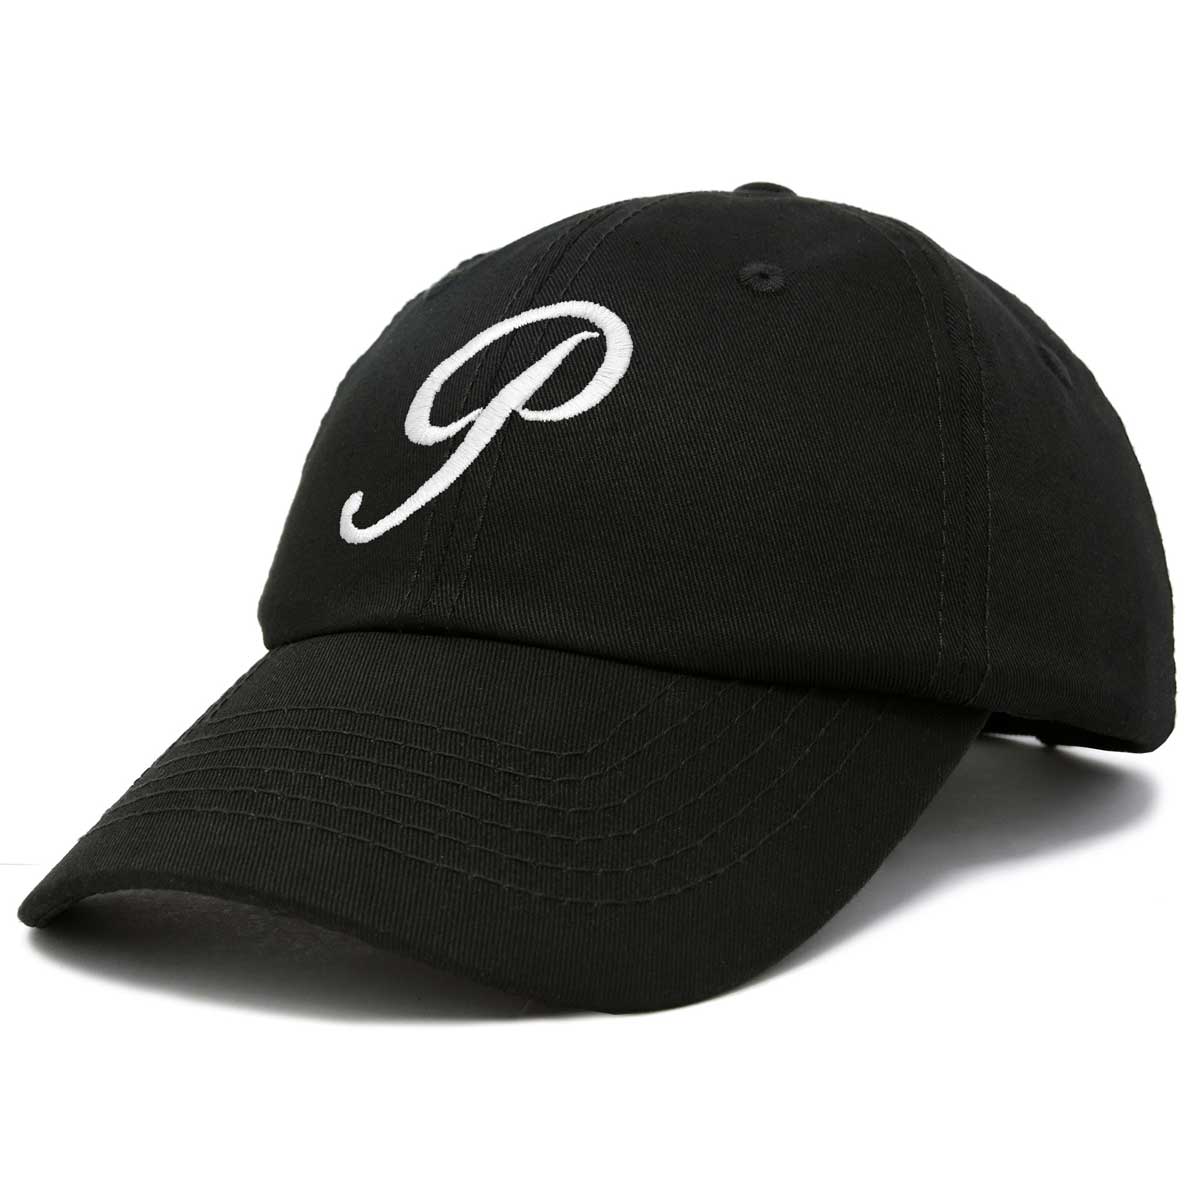 Letter p Caps & Hats, Unique Designs